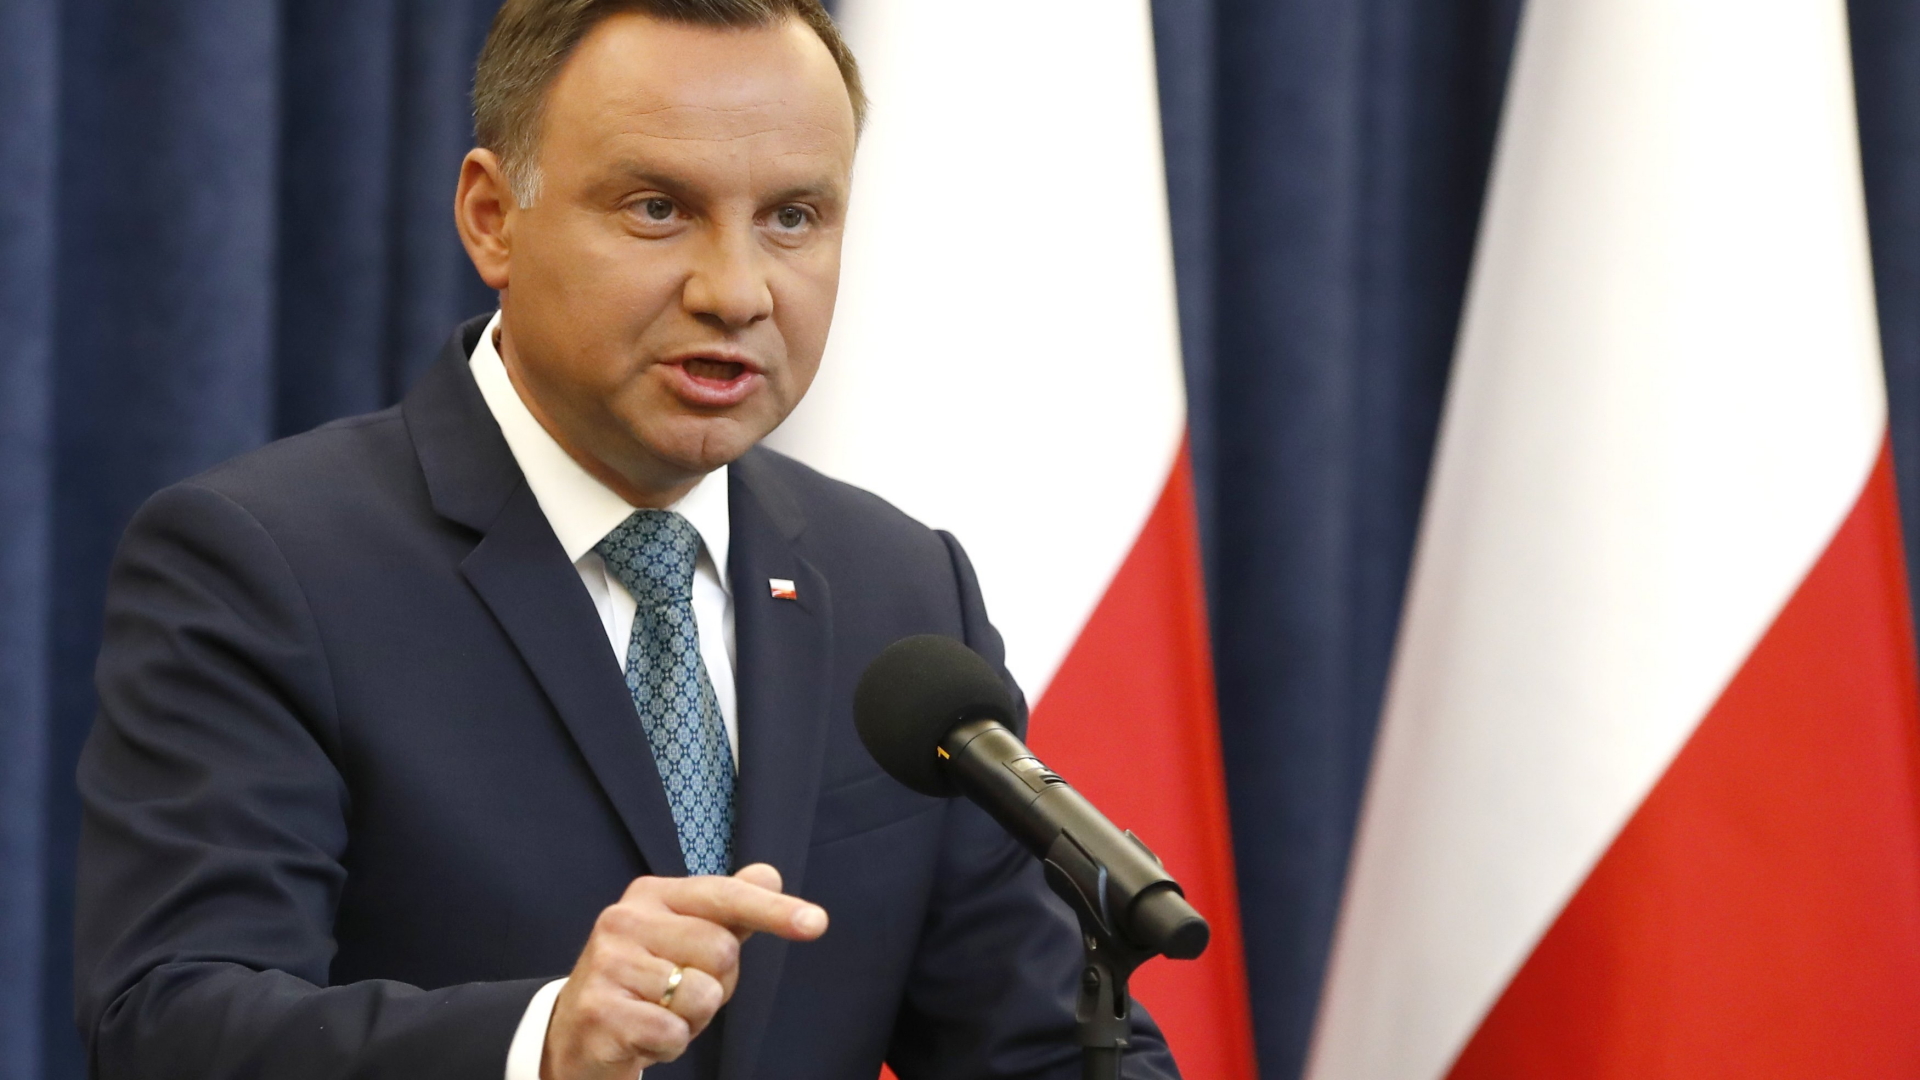 Polen Präsident Duda bei der Pressekonferenz | REUTERS